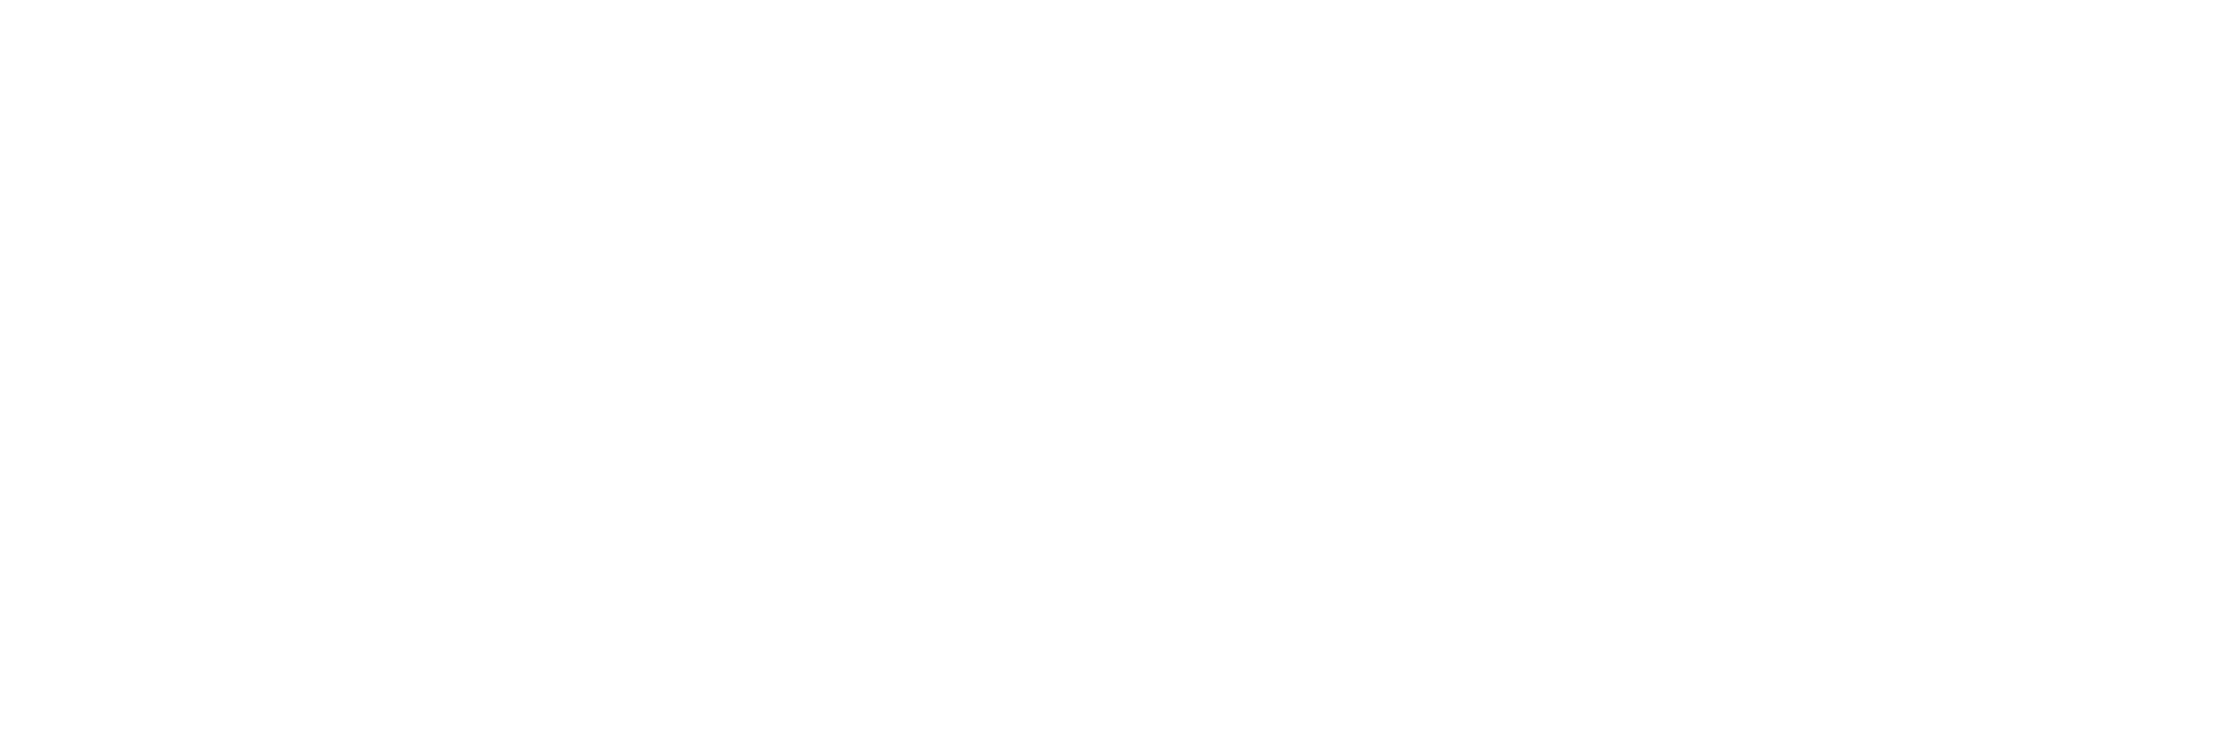 Jessica-logo-light-v1